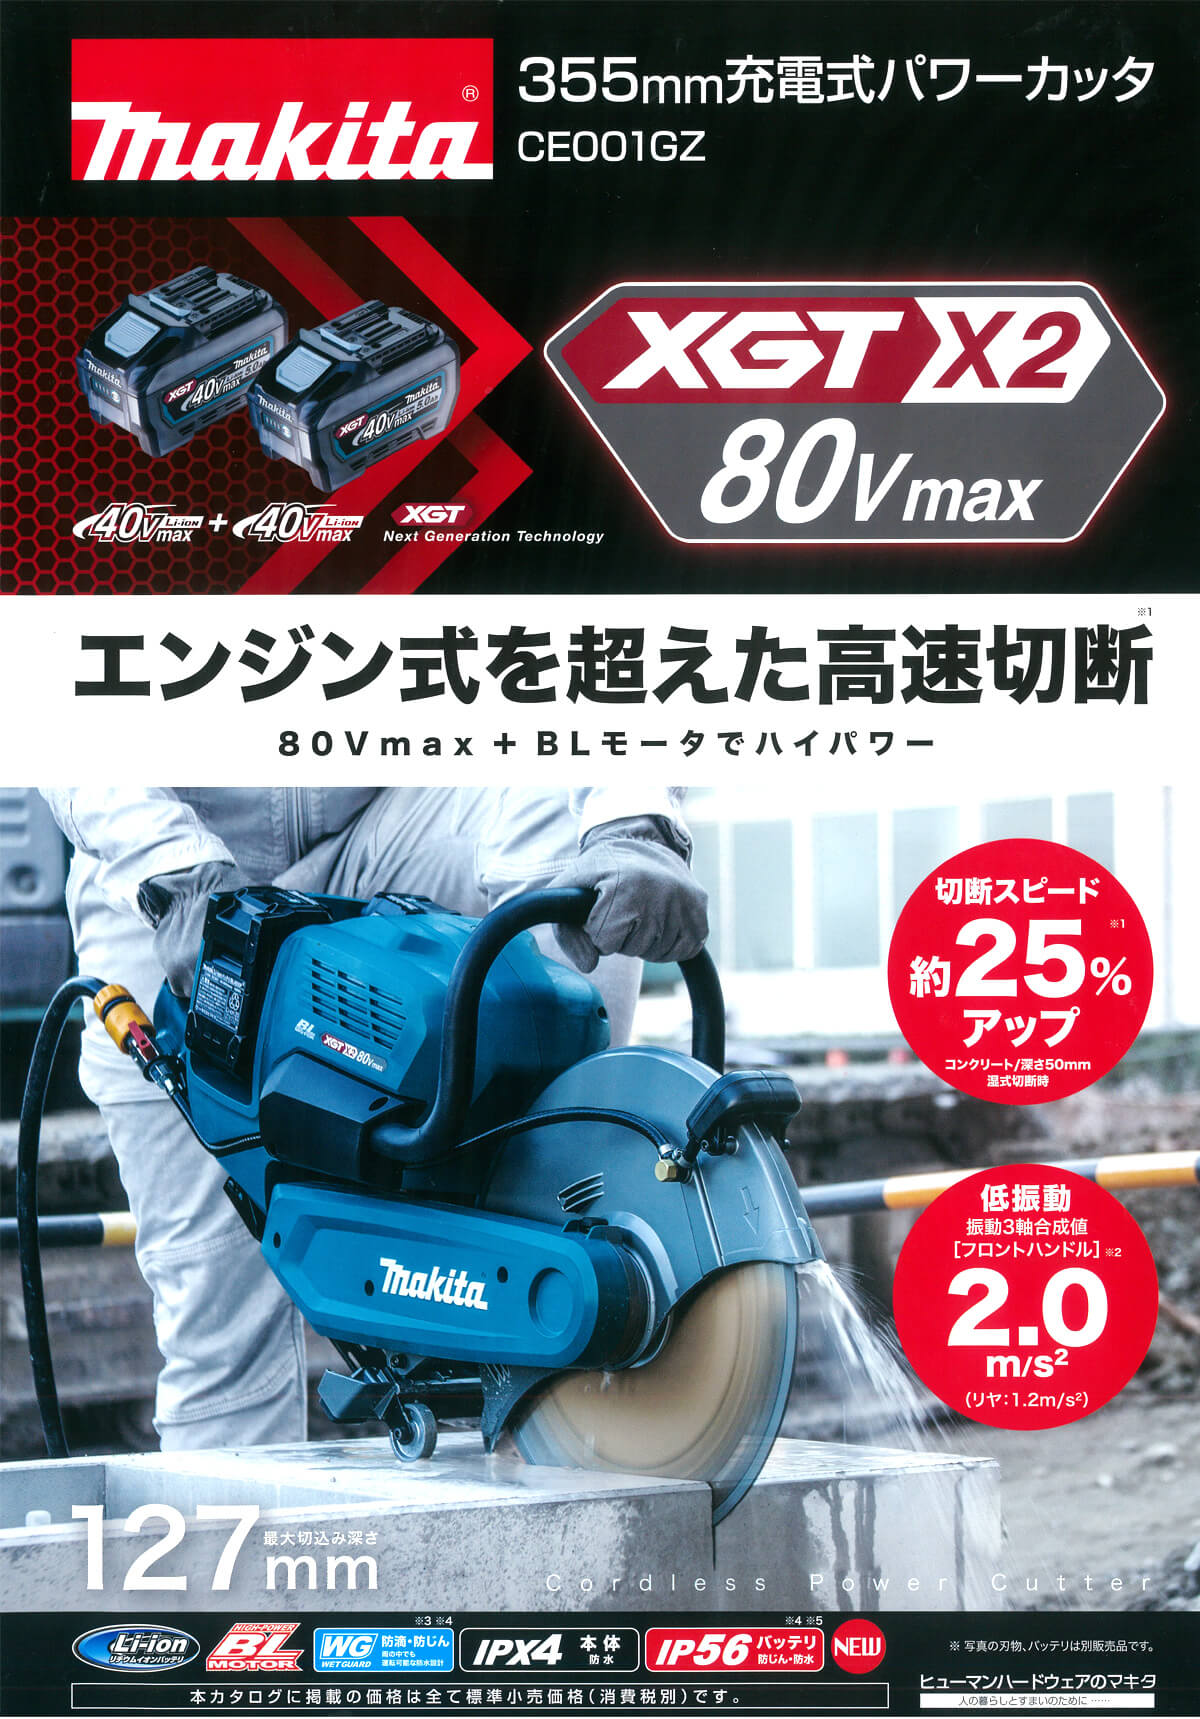 マキタ CE001GZ 80Vmax 355mm充電式パワーカッター 本体のみ ウエダ金物【公式サイト】